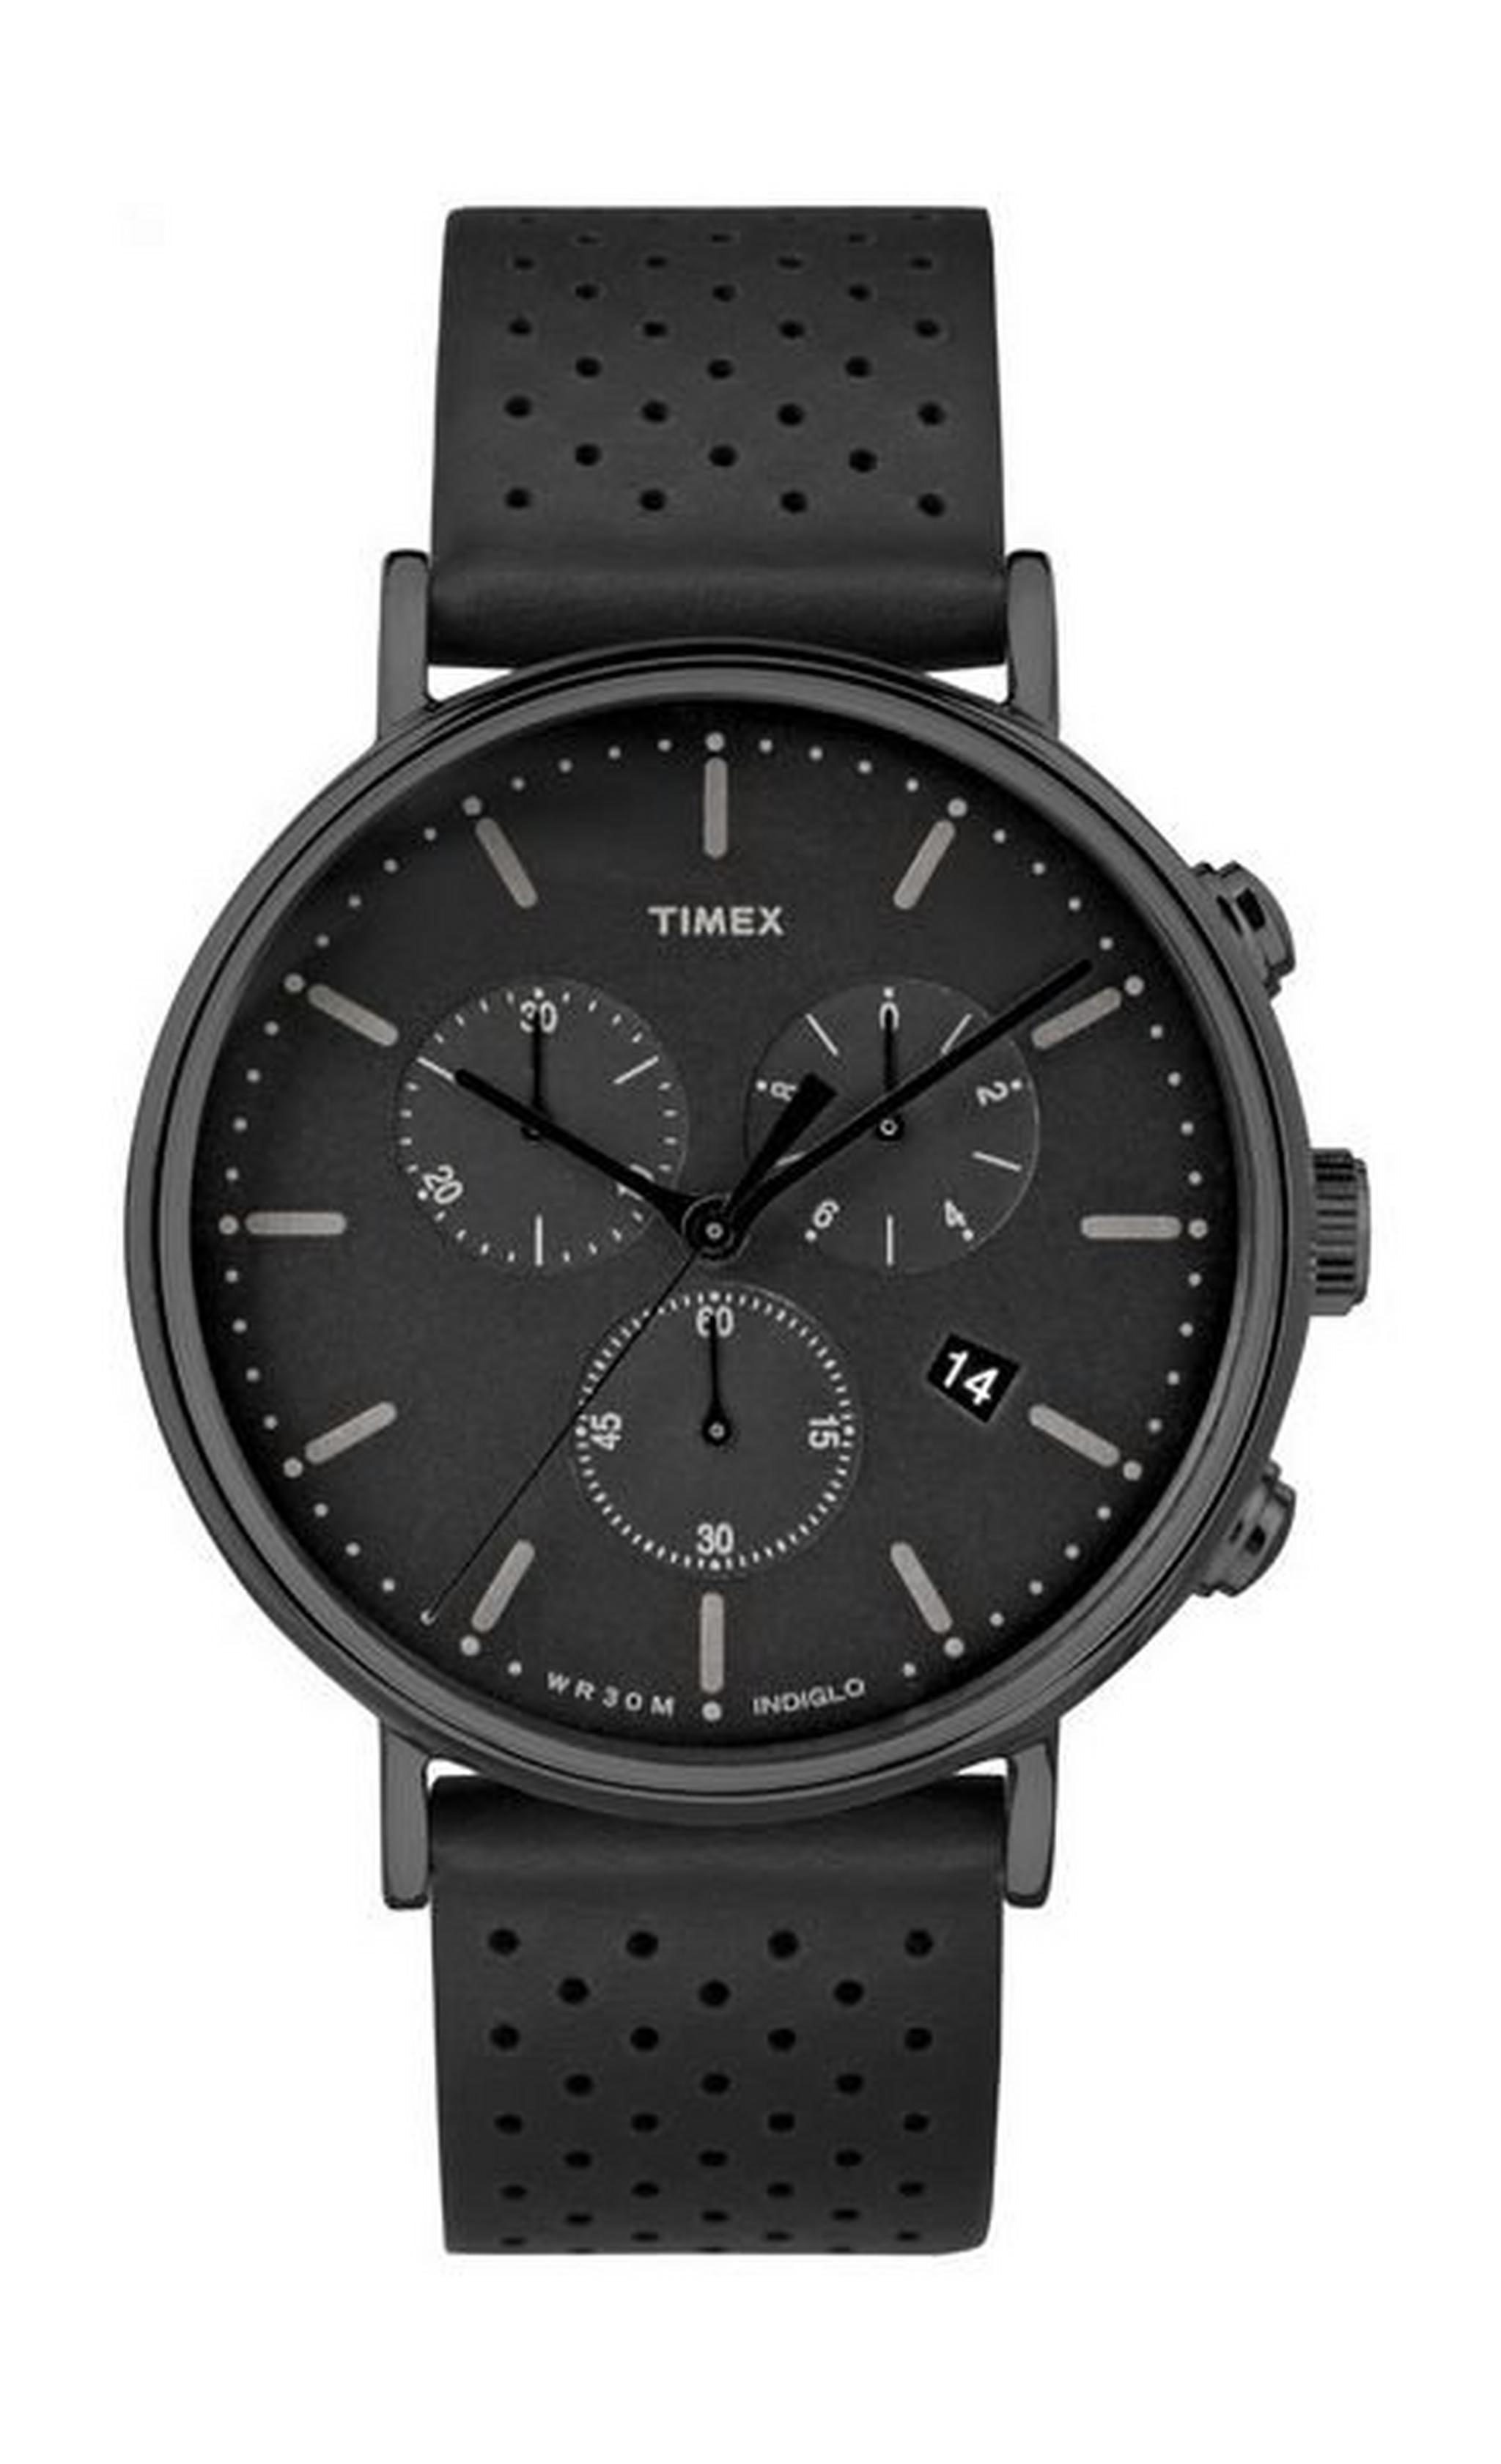 ساعة تايمكس فيرفيلد للجنسين بعرض كرونوغراف وحزام جلدي – أسود (TW2R26800)